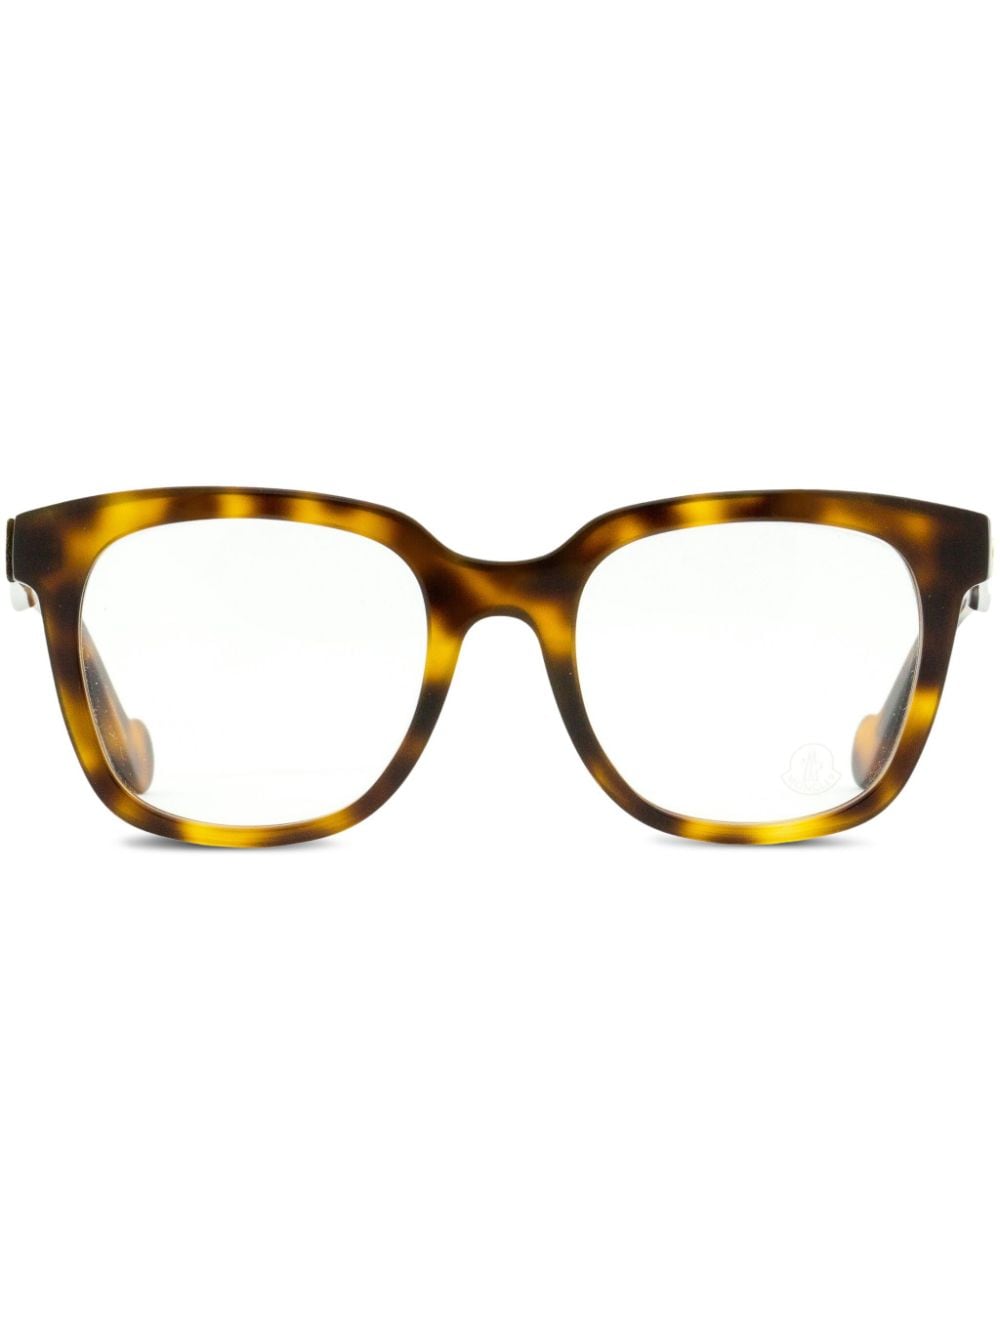 moncler eyewear lunettes de vue carrées à effet écailles de tortue - marron